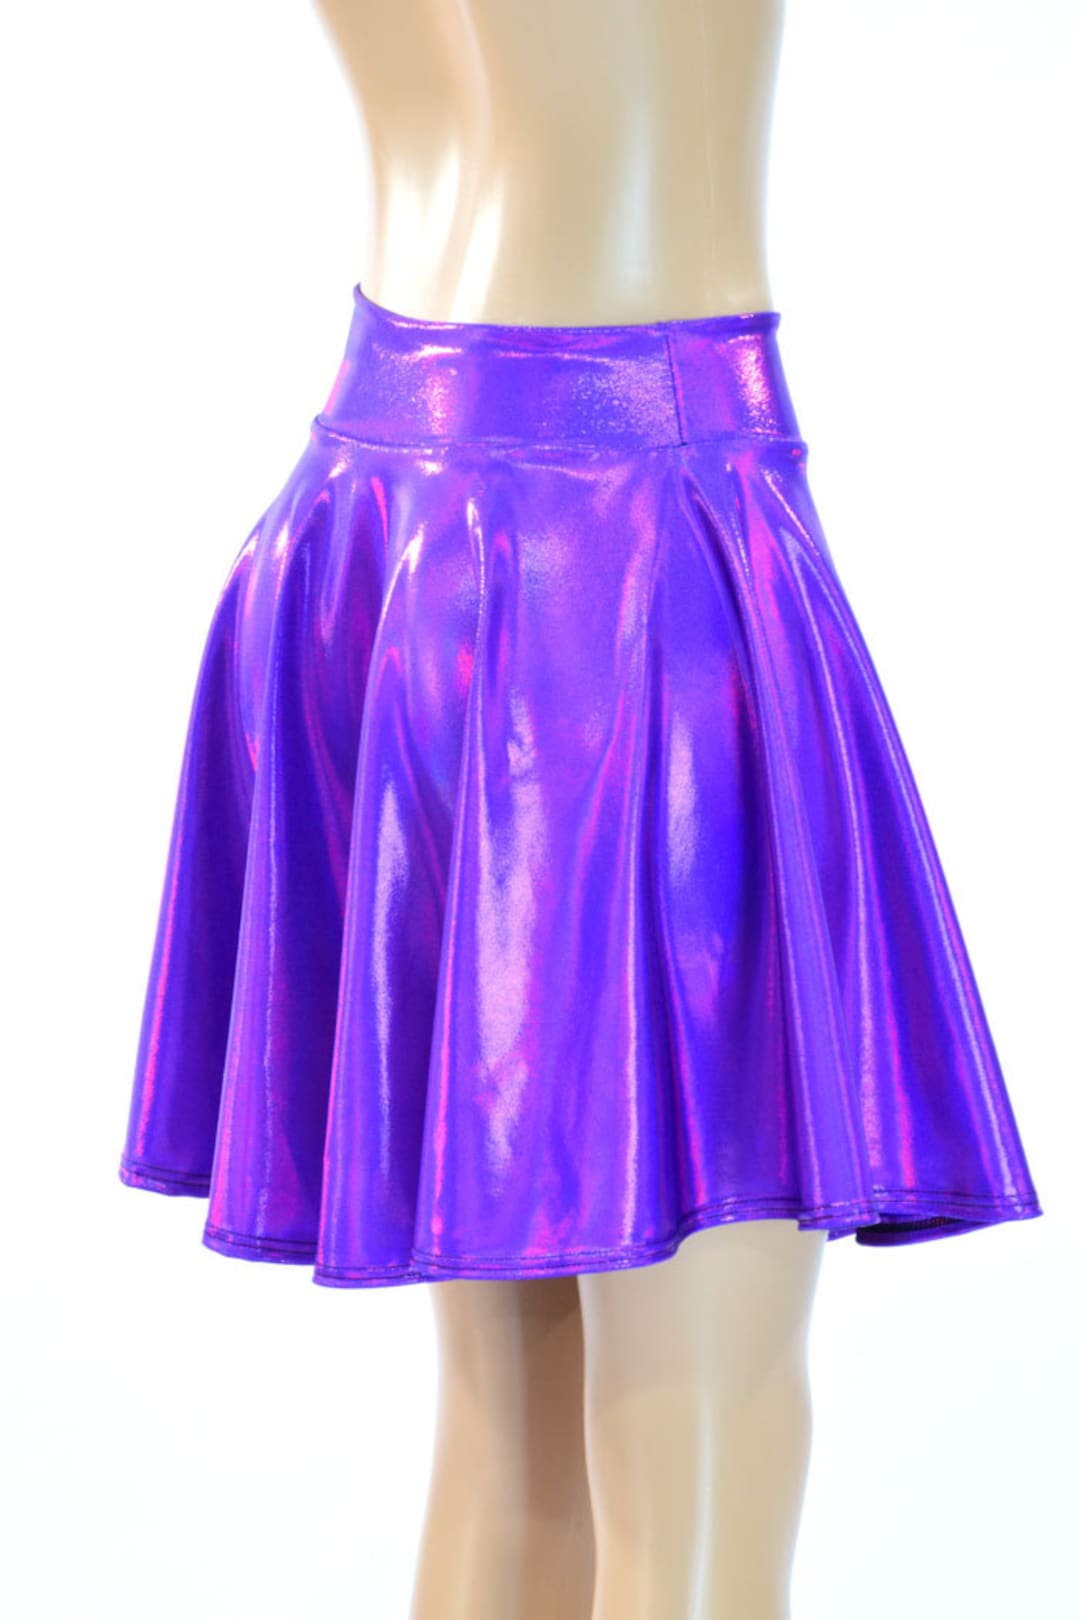 Purple Holographic Metallic Skater Skirt 150189 - Etsy